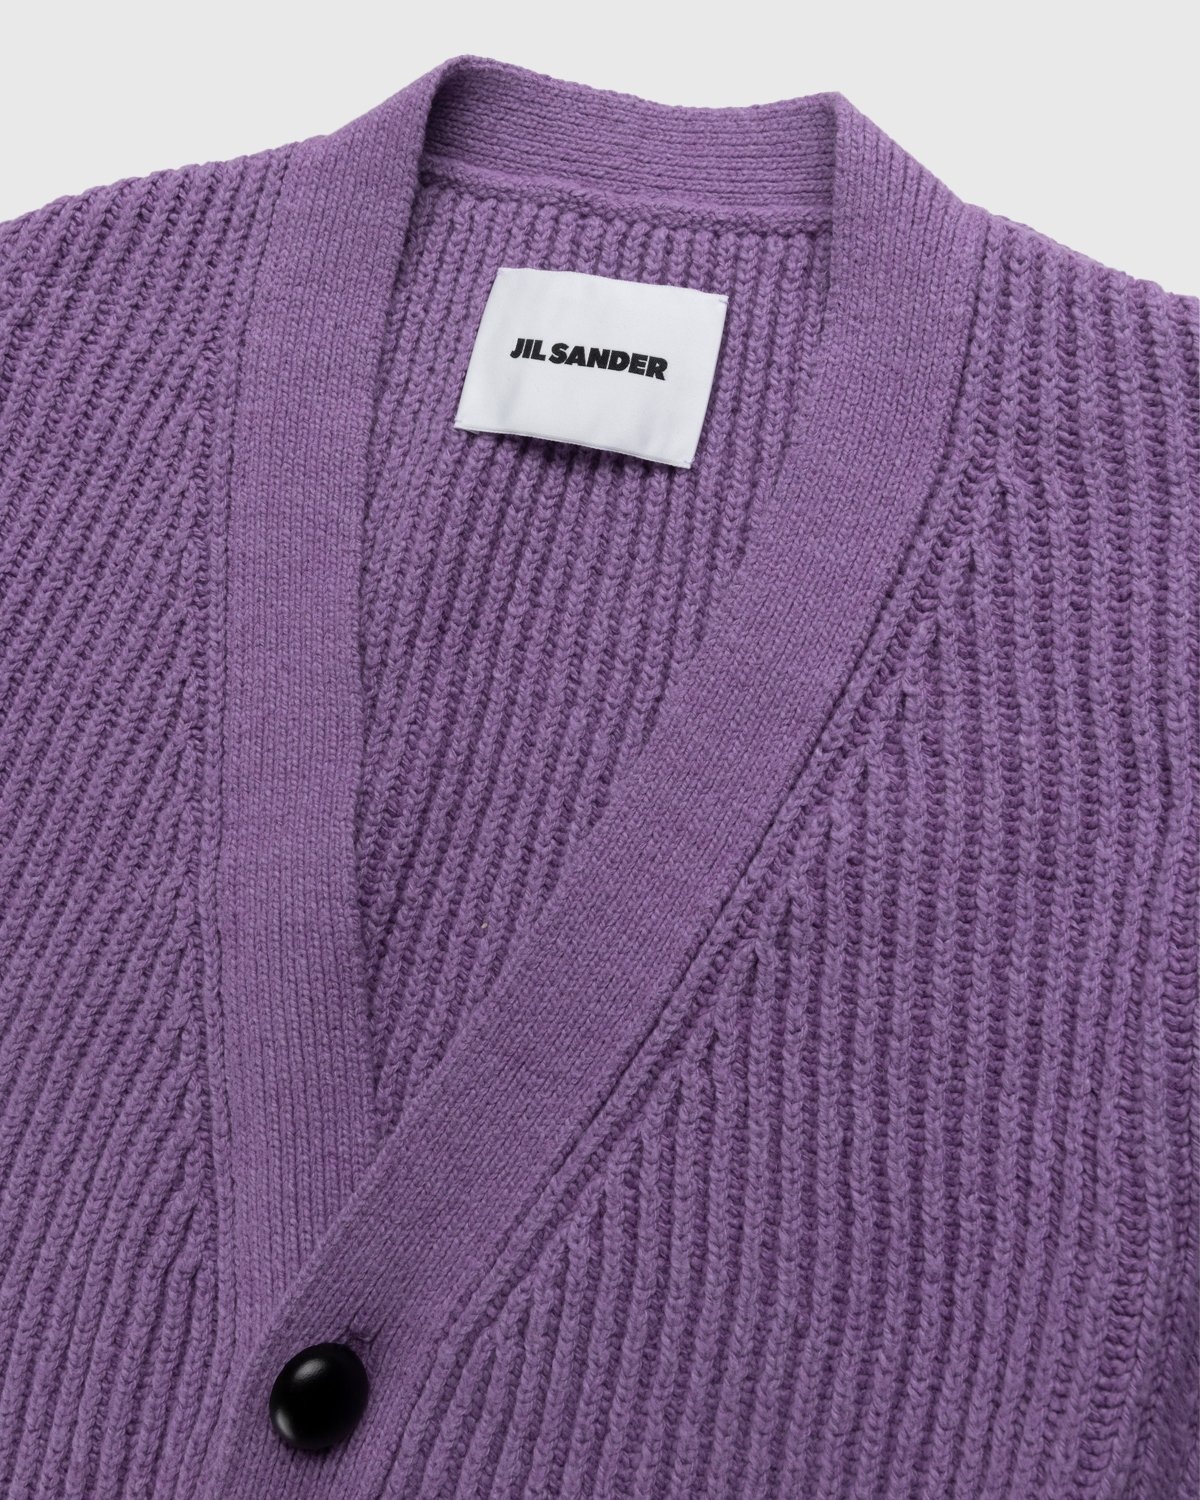 Jil Sander – Rib Knit Cardigan Medium Purple - Knitwear - Purple - Image 3